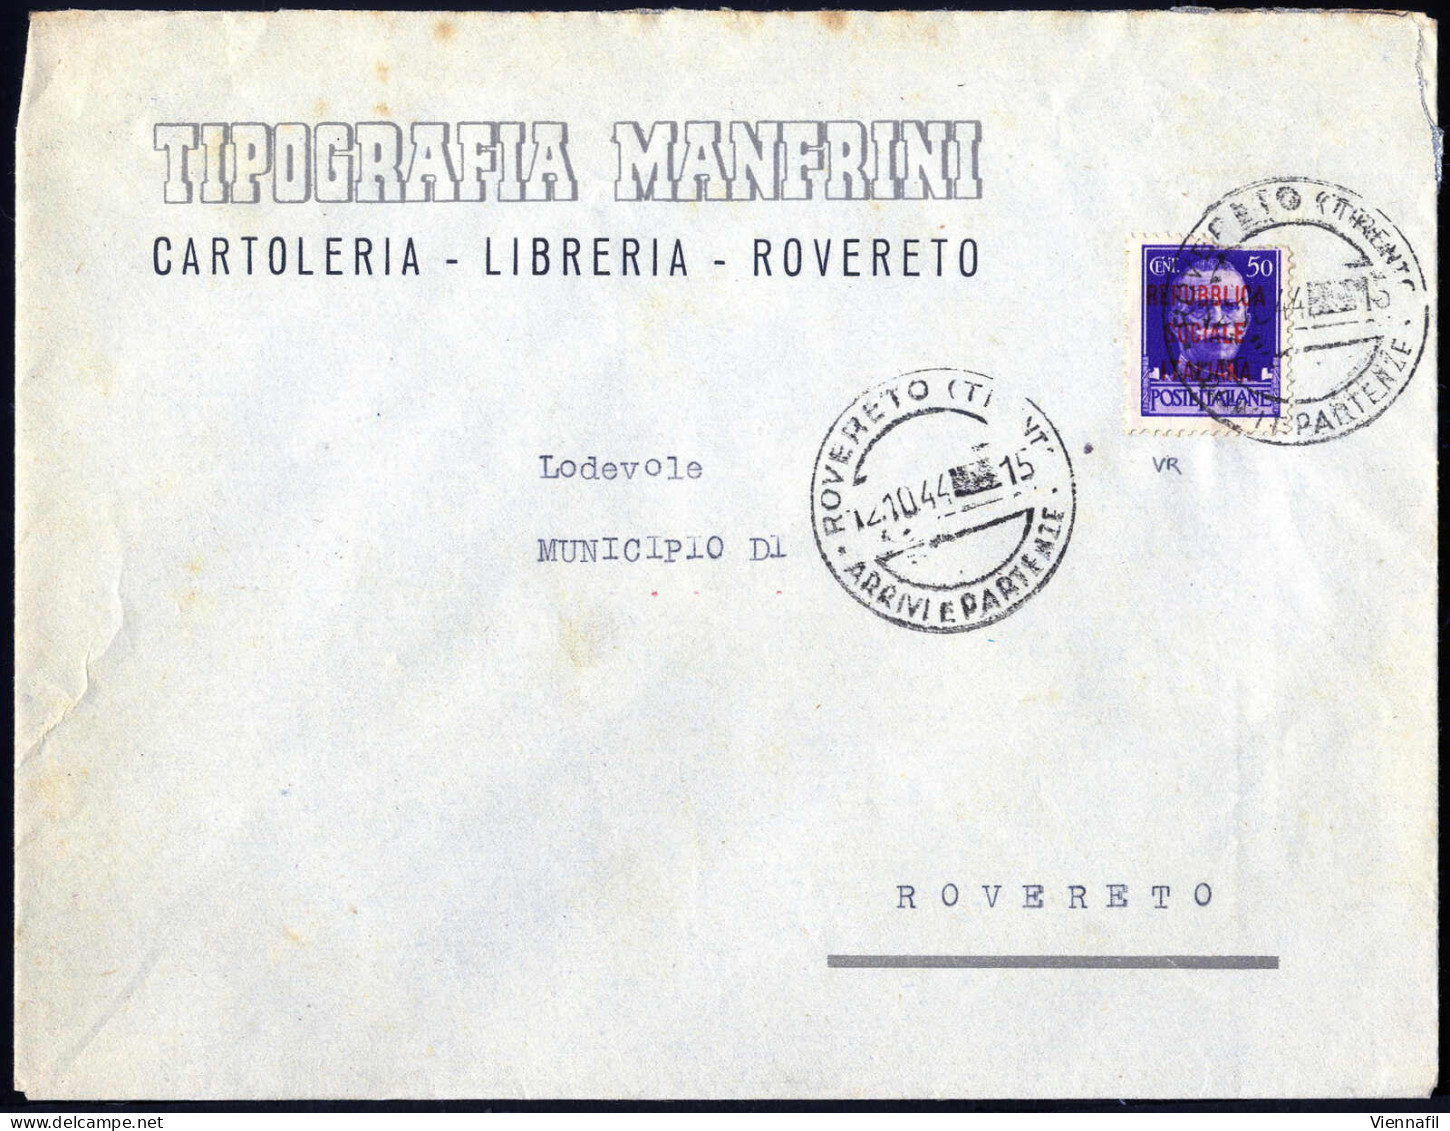 cover R.S.I. 1943/45 ca., insieme di 30 buste tutte indirizzate a Rovereto da varie località del Trentino, affrancate pr